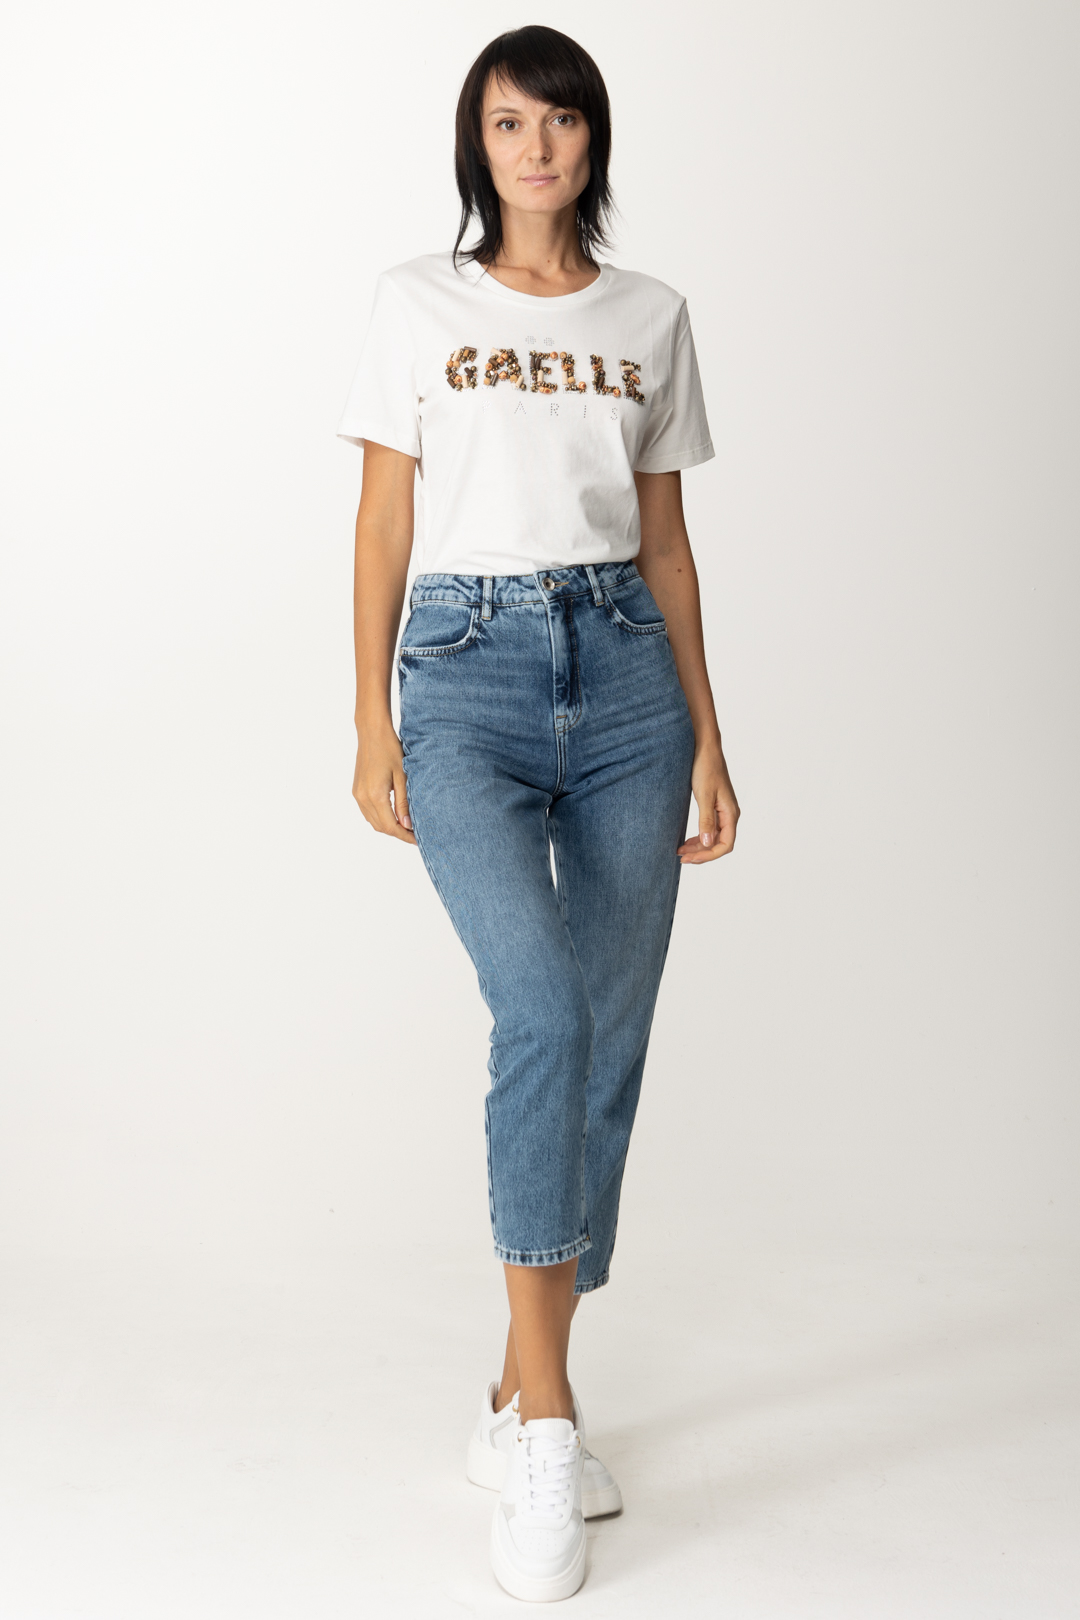 Vista previa: Gaelle Paris Camiseta con logo bordado Offwhite